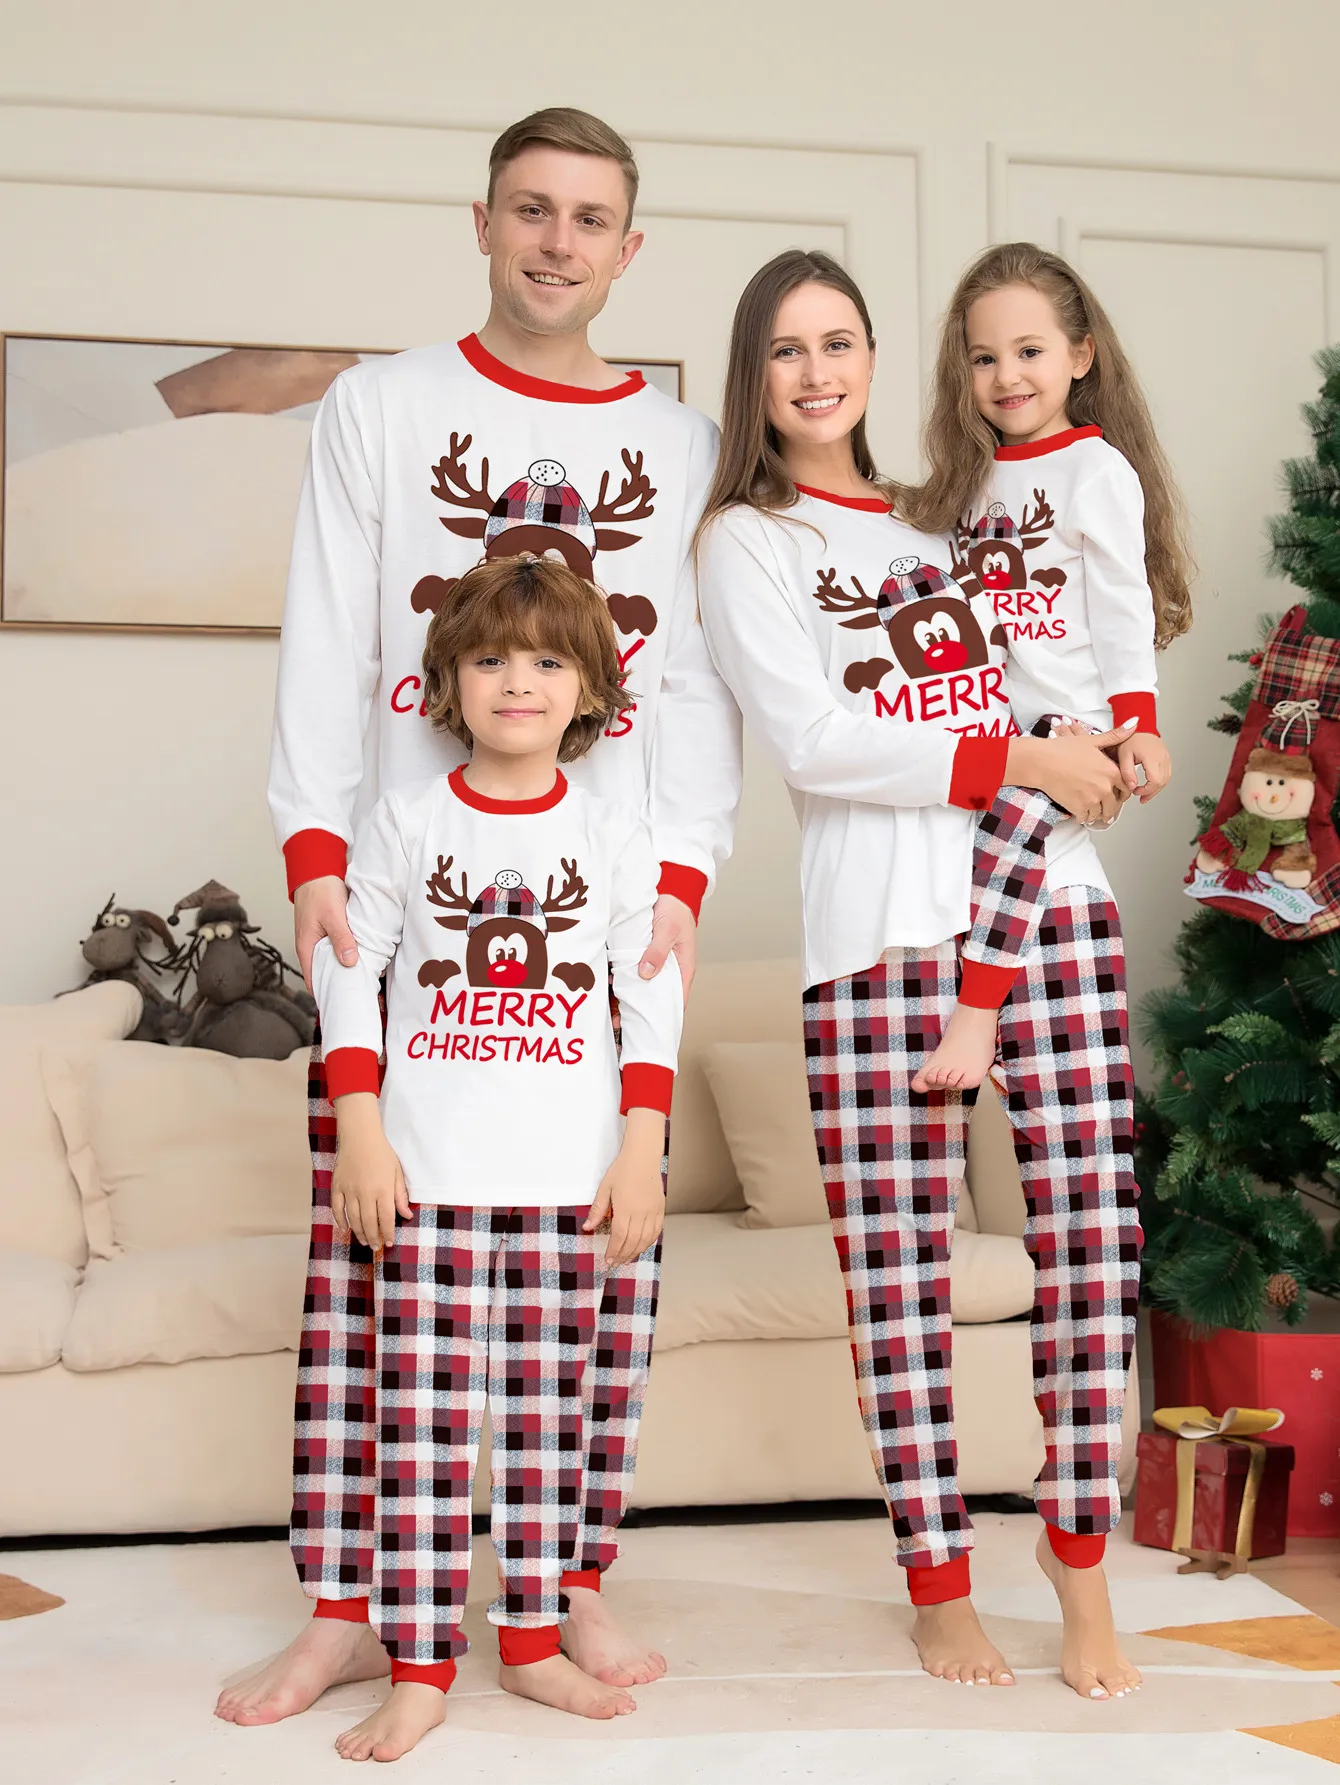 Christmas Elk Print Family Pajama Set For Mom, Dad, Kids And Baby